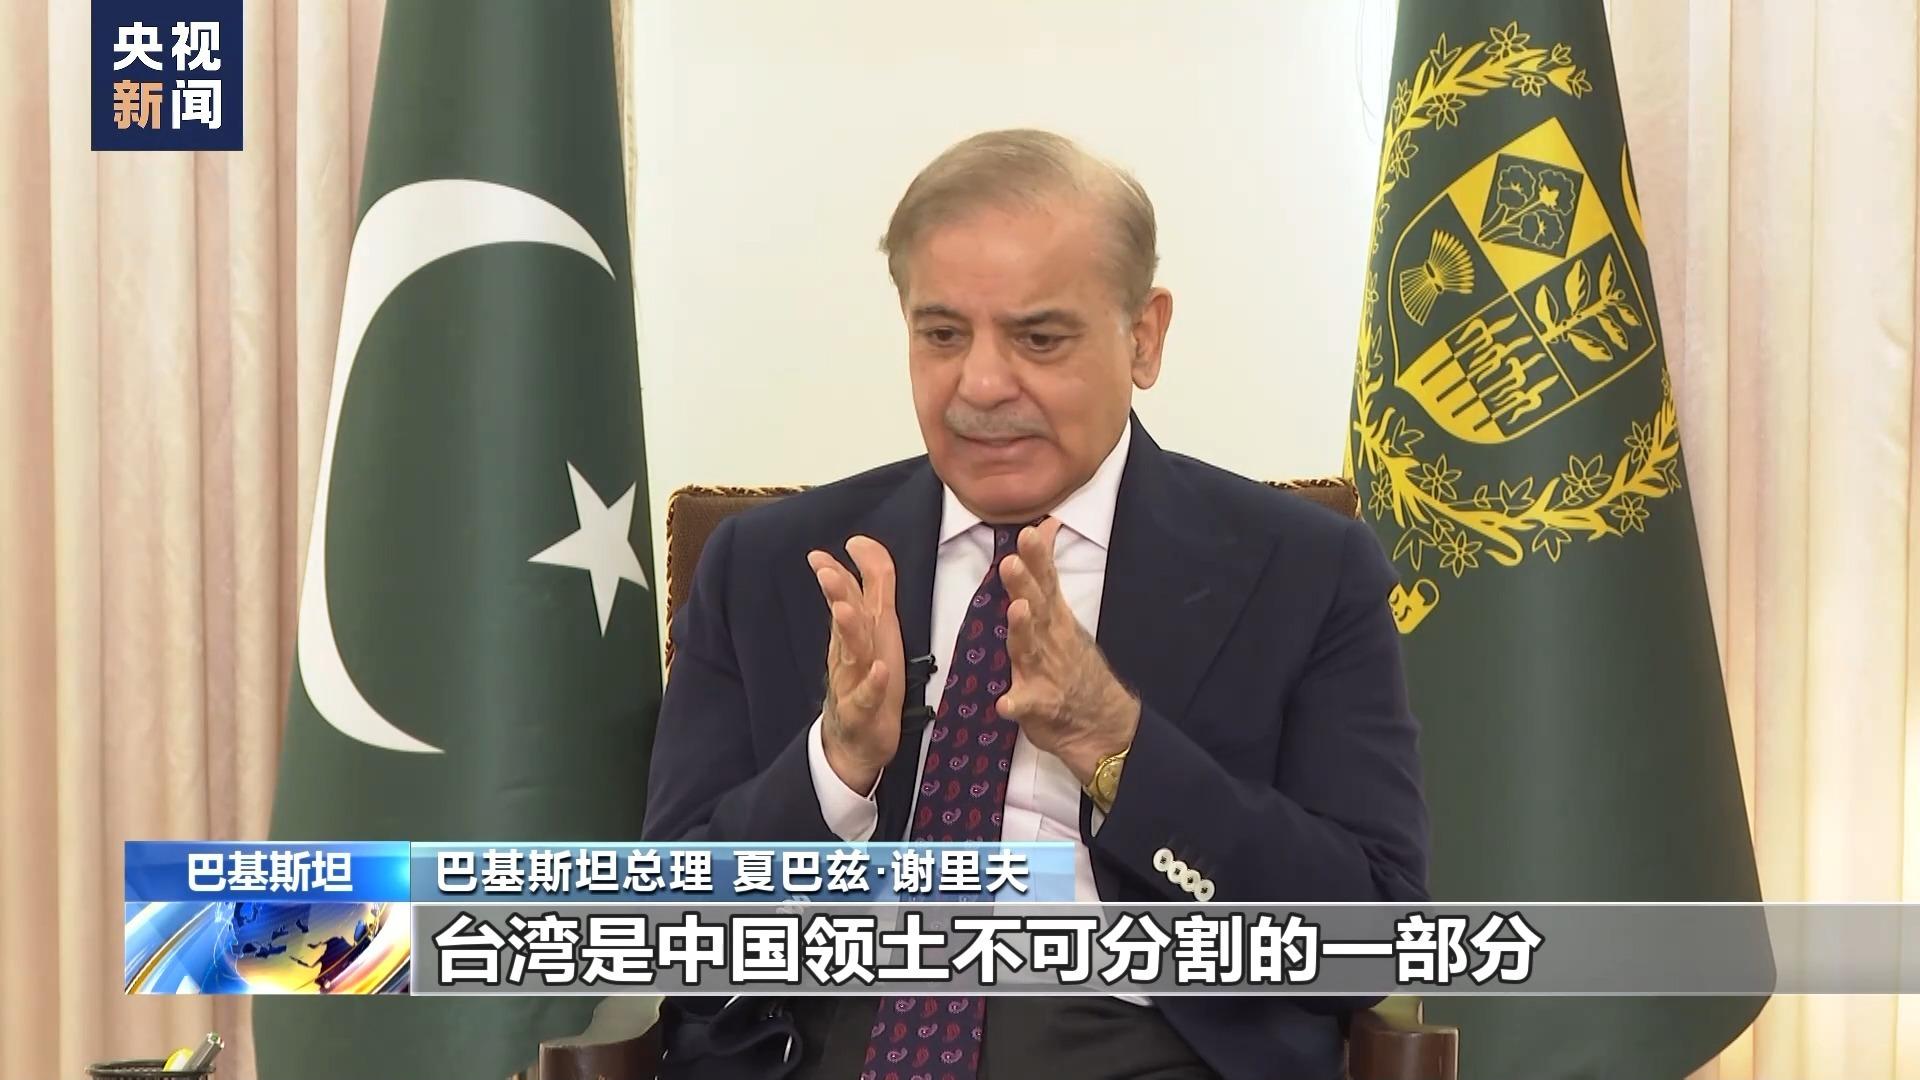 पाकिस्तान र चीनबीचको मित्रता अटुट